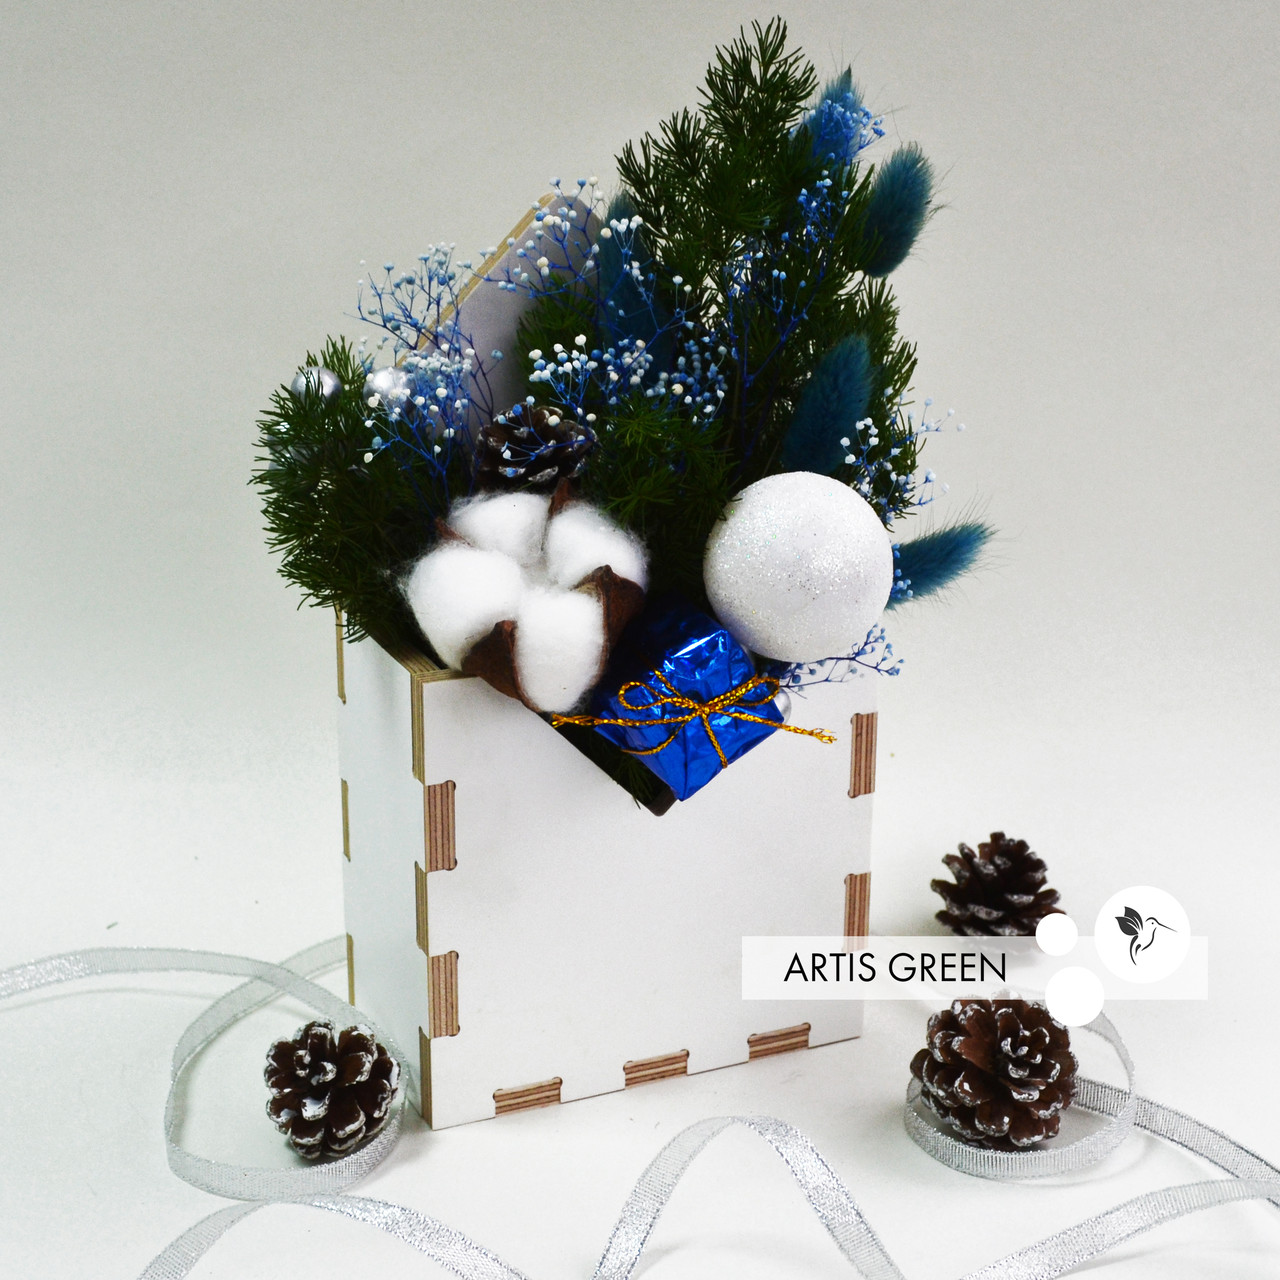 Фіто-конвертик ручної роботи зі стабілізованих рослин "Artis Green", S93